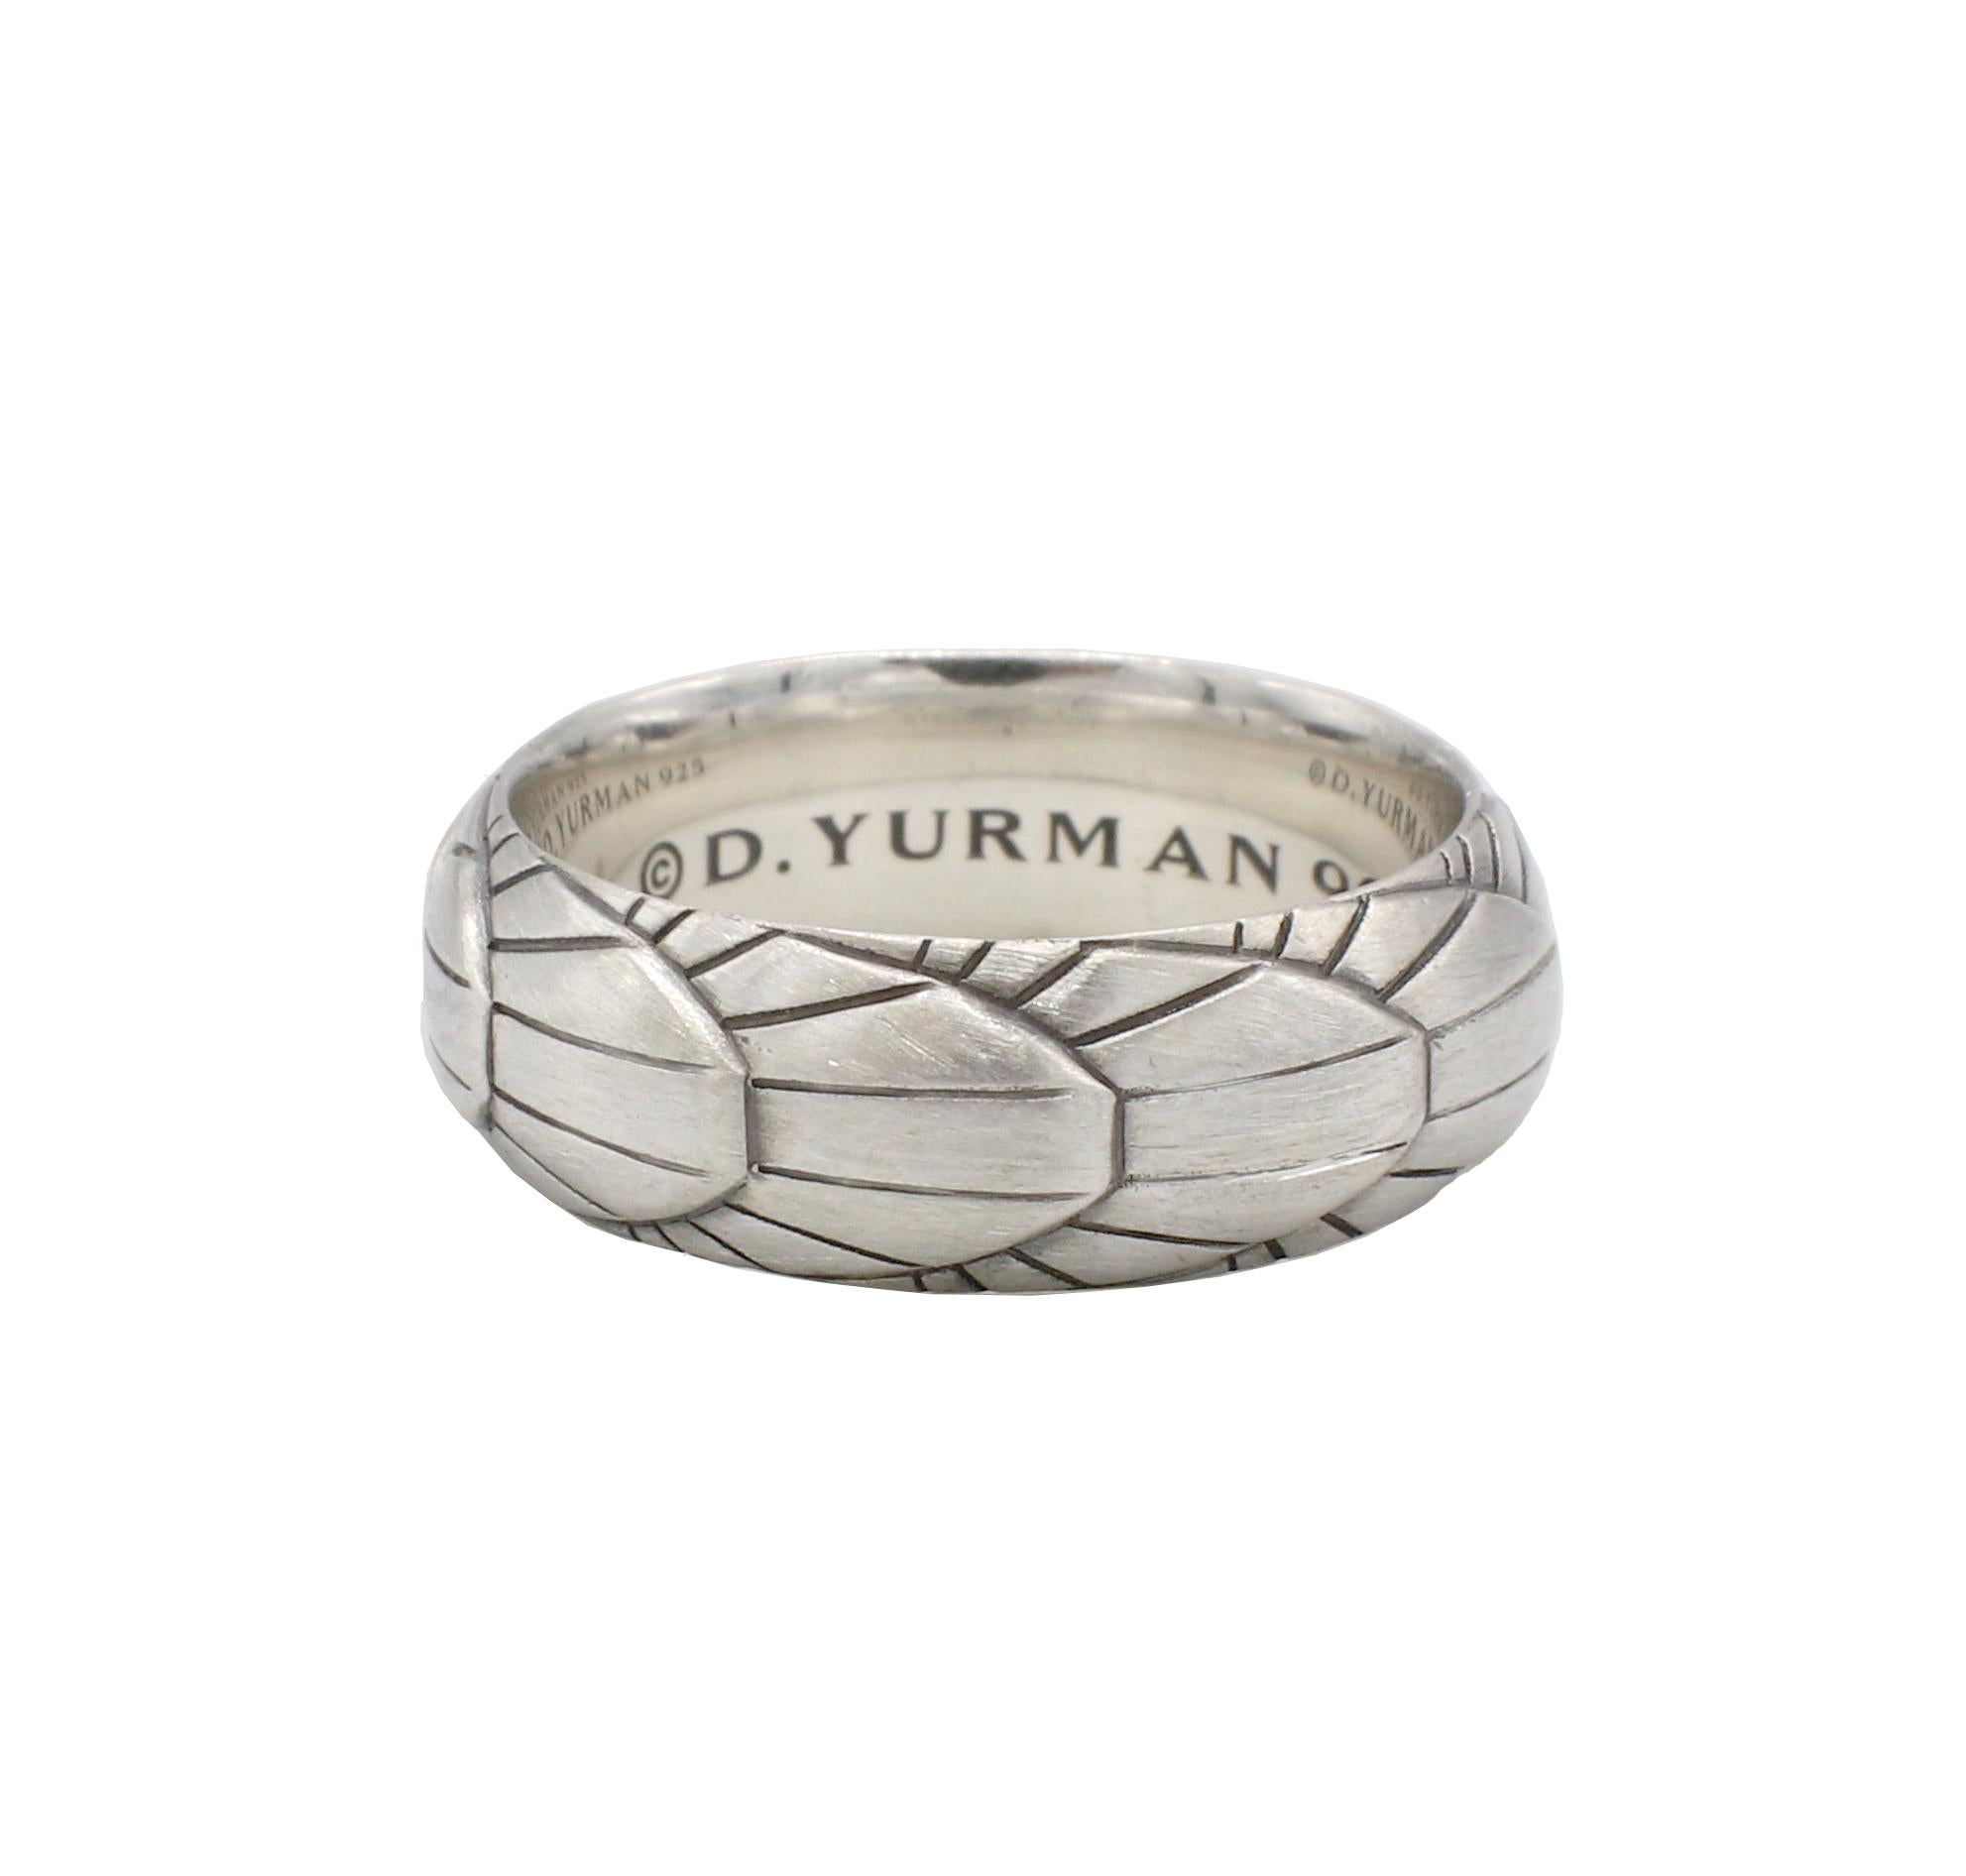 David Yurman Empire Herrenring aus Sterlingsilber 
Metall: Sterling Silber
Gewicht: 8,68 Gramm
Breite: 7,5 mm
Größe: 9.5 (US)
Einzelhandel: $495 USD
